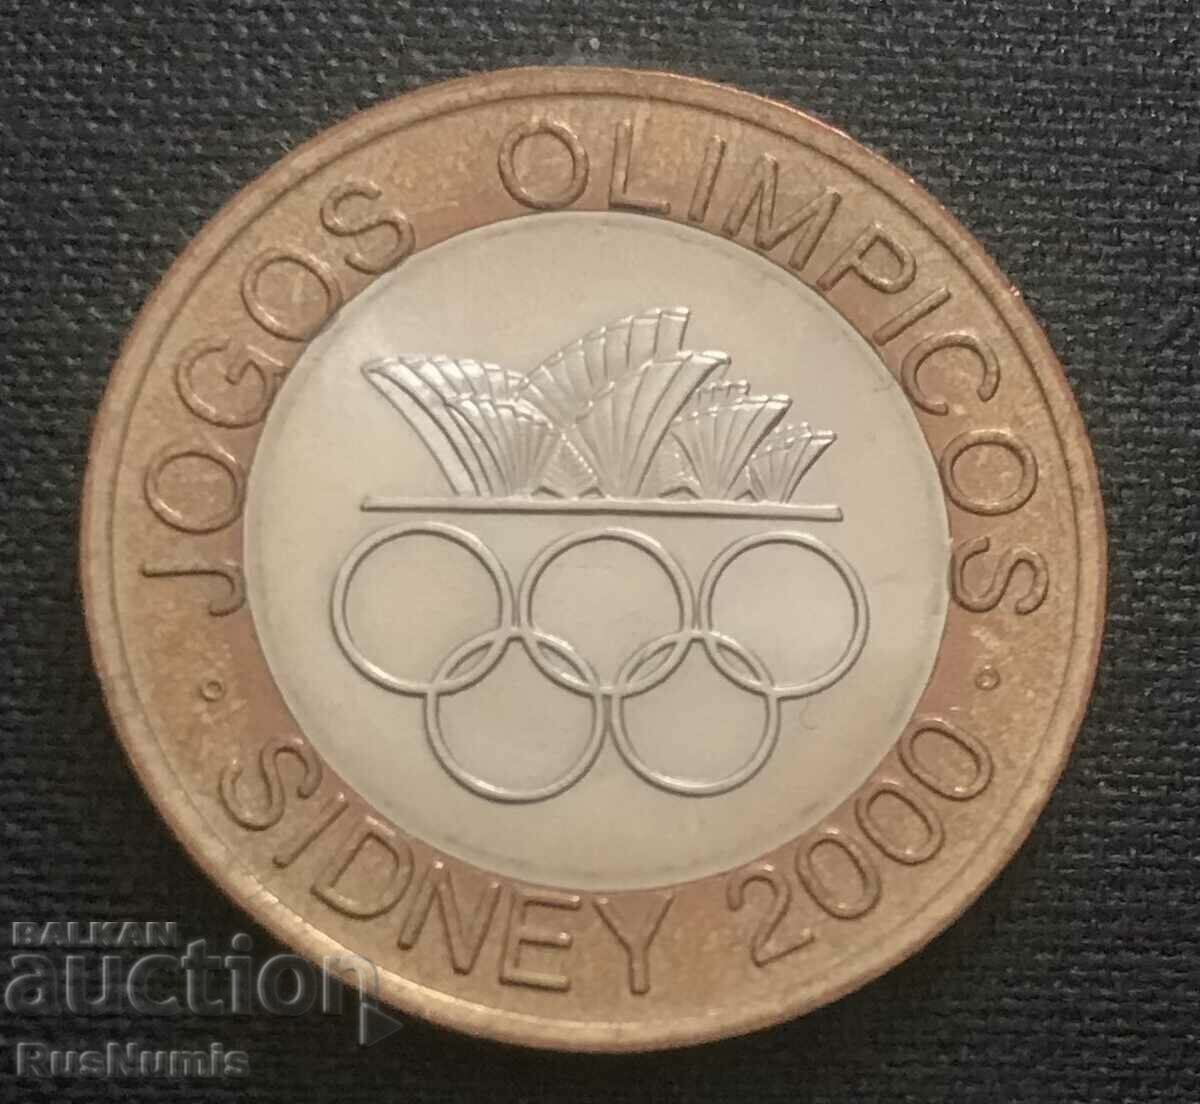 Πορτογαλία. 200 εσκούδο 2000 Ολυμπιακοί Αγώνες Σίδνεϊ. UNC.